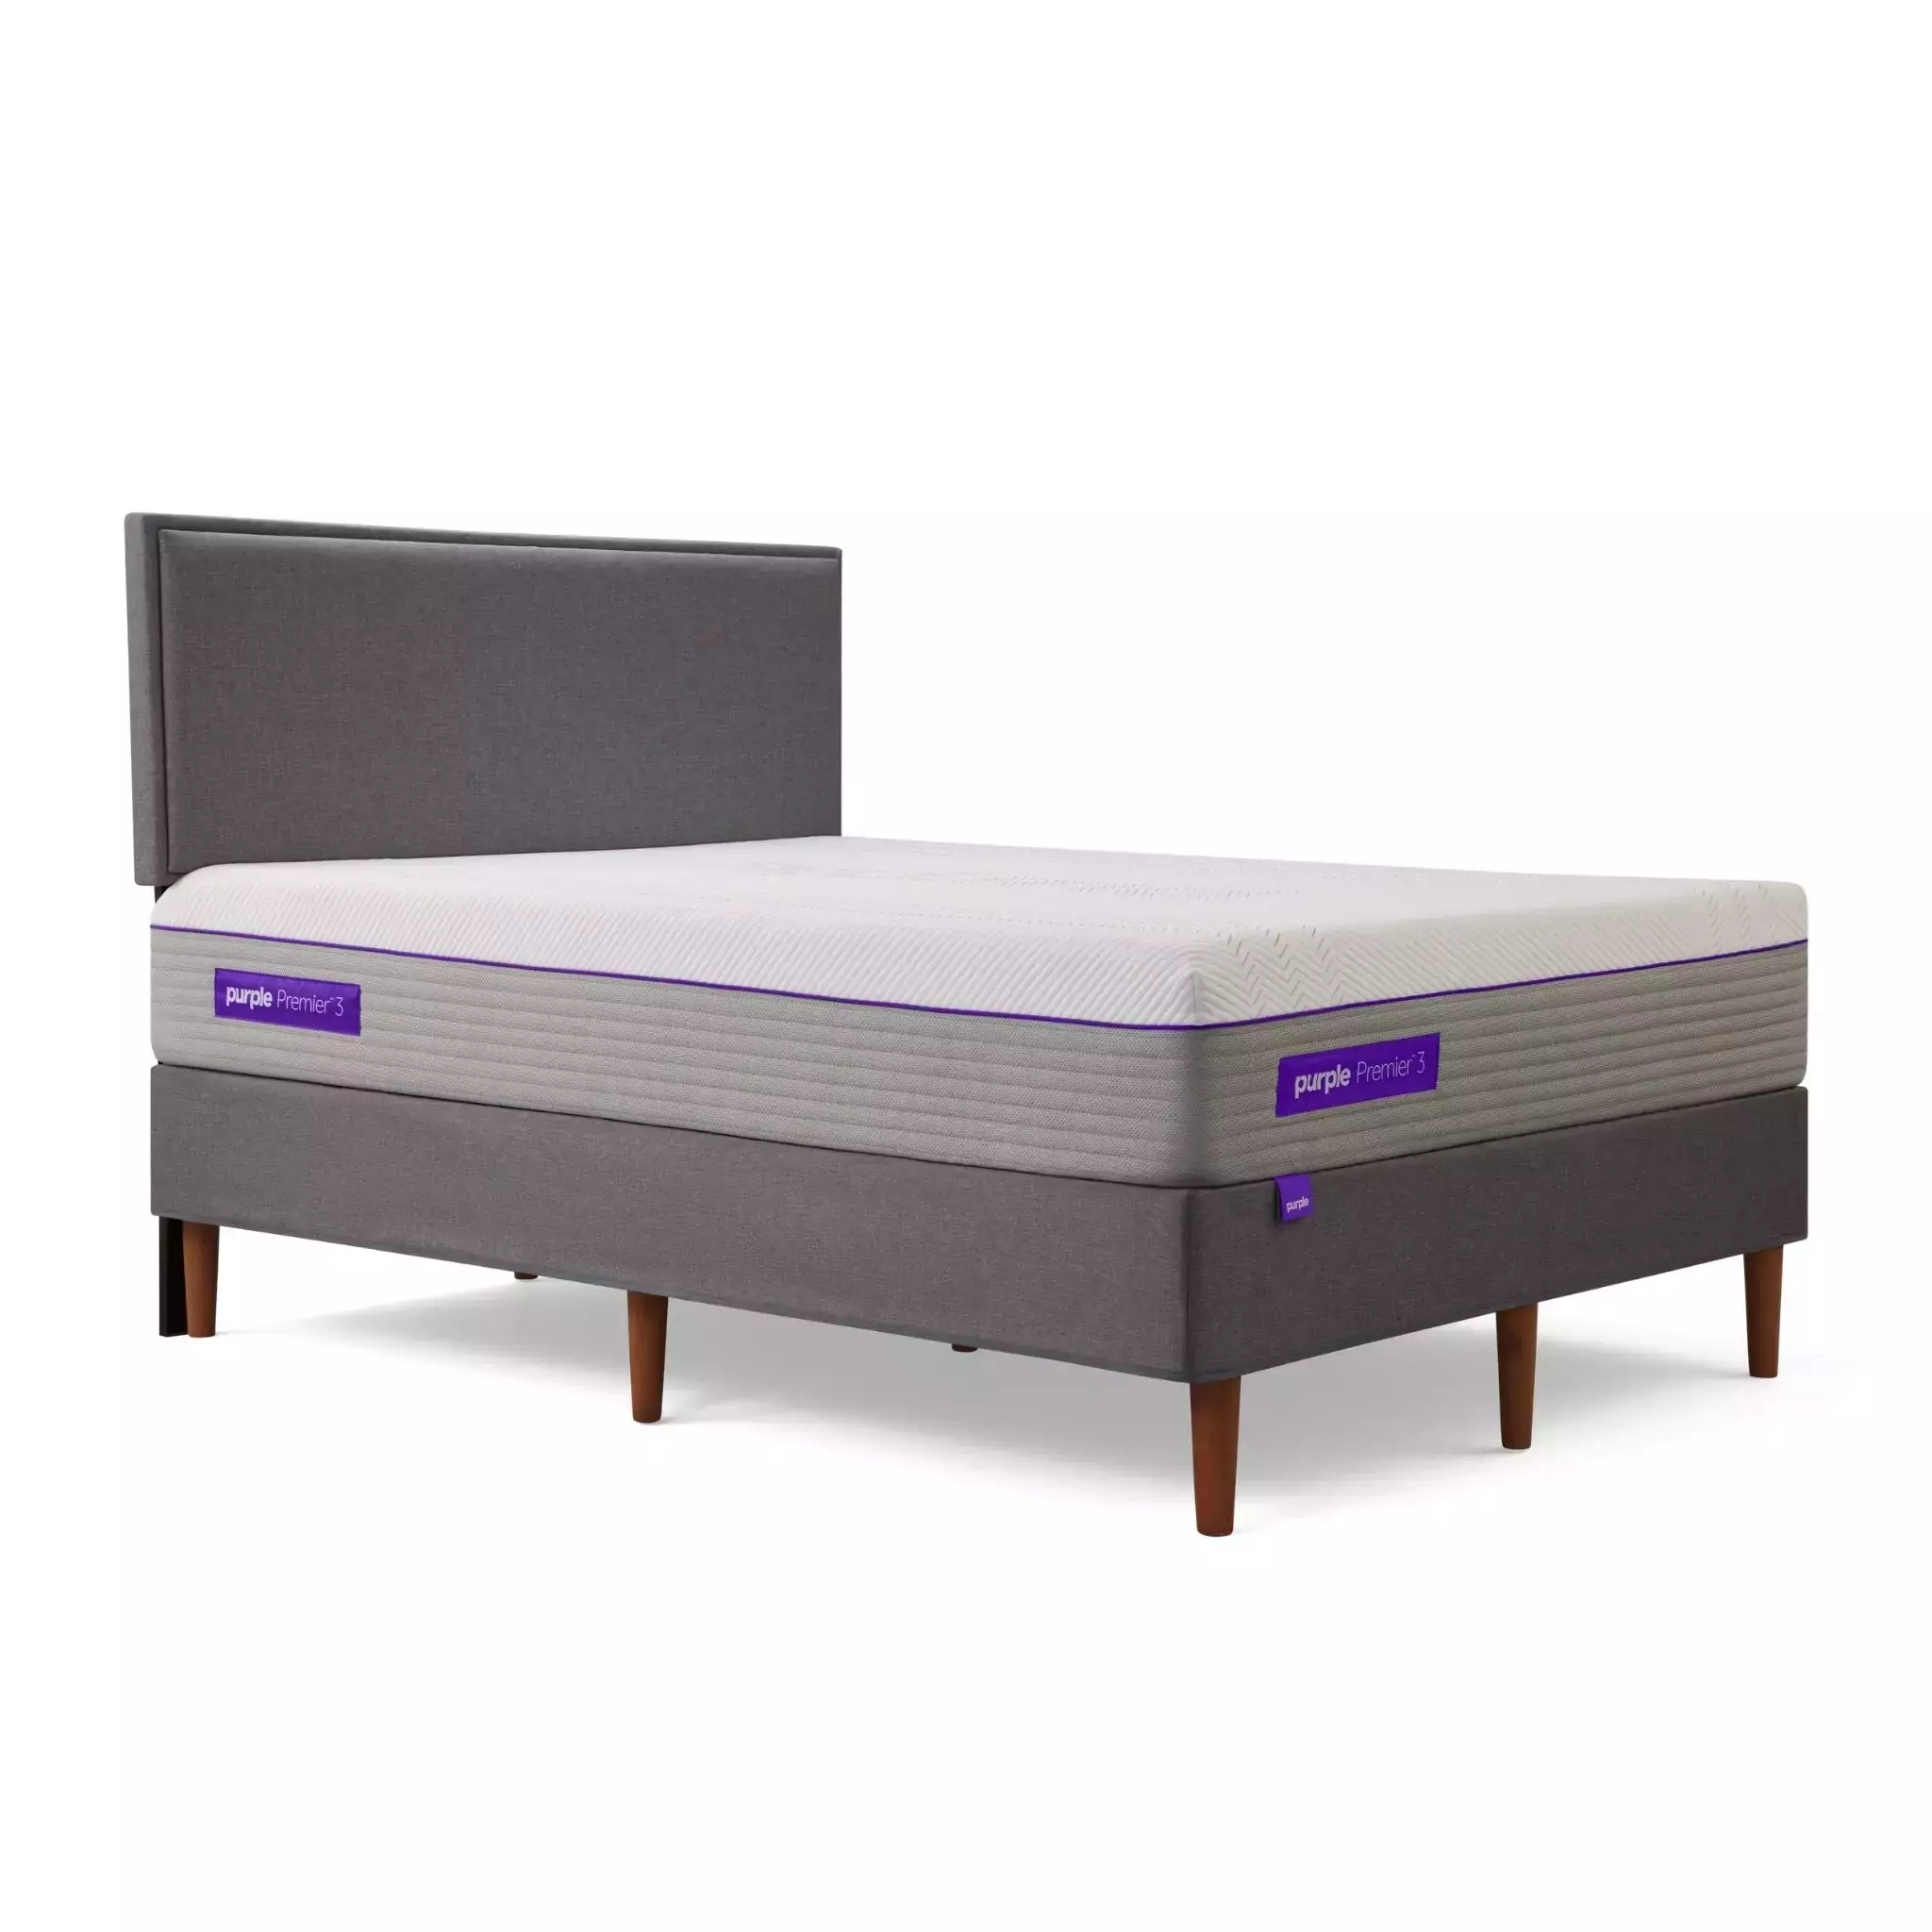 purple foam mattress on gray bed frame